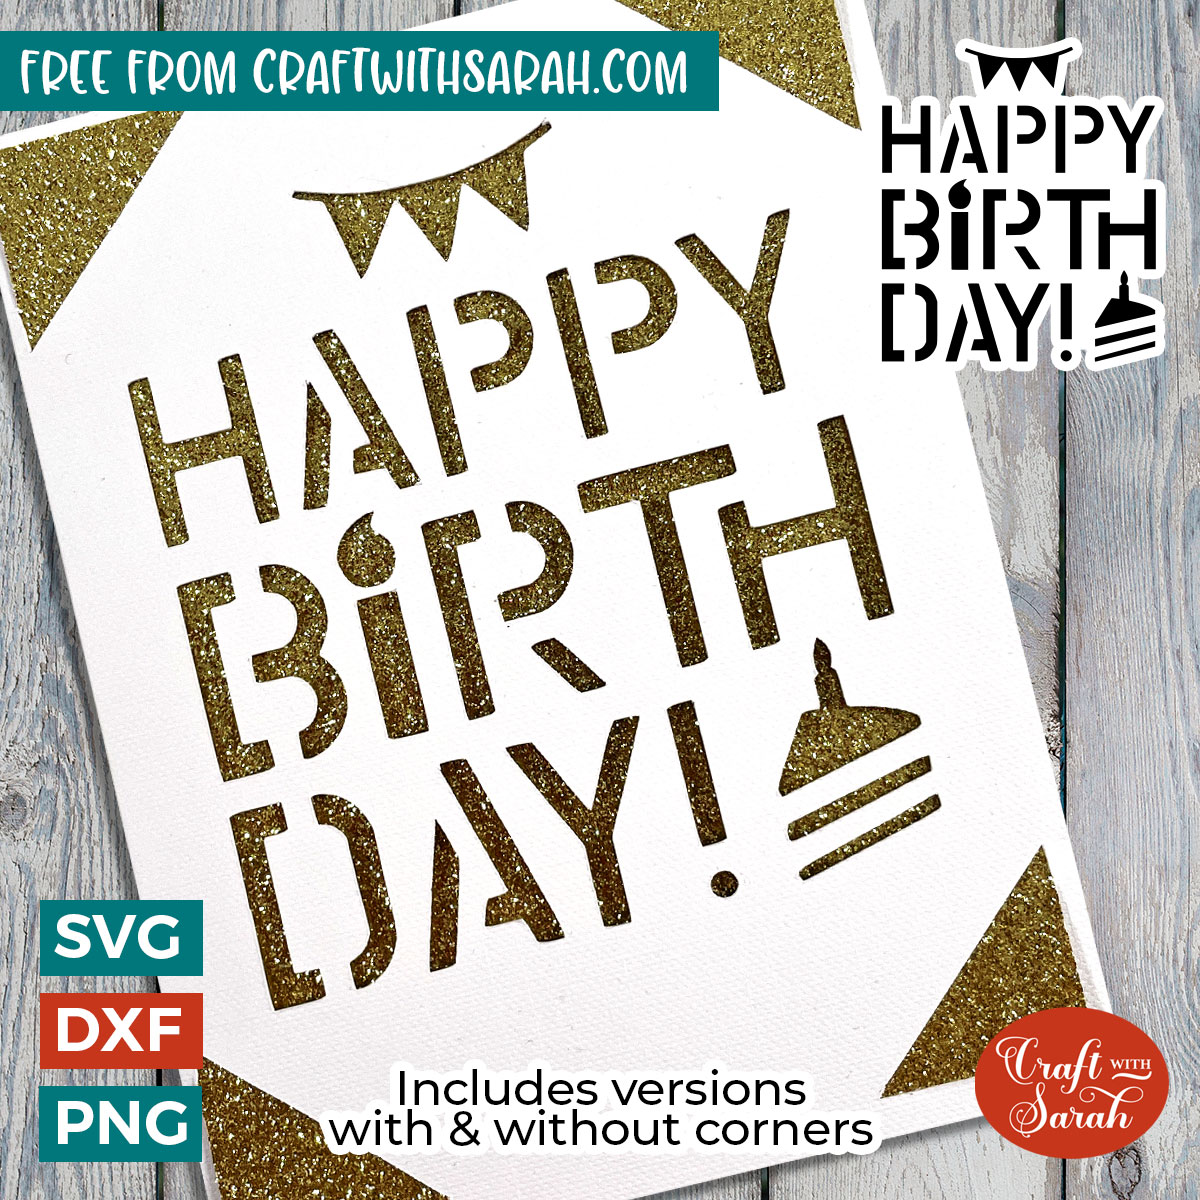 Cricut Joy Cutaway Card SVG, Happy Birthday Cutaway Card SVG